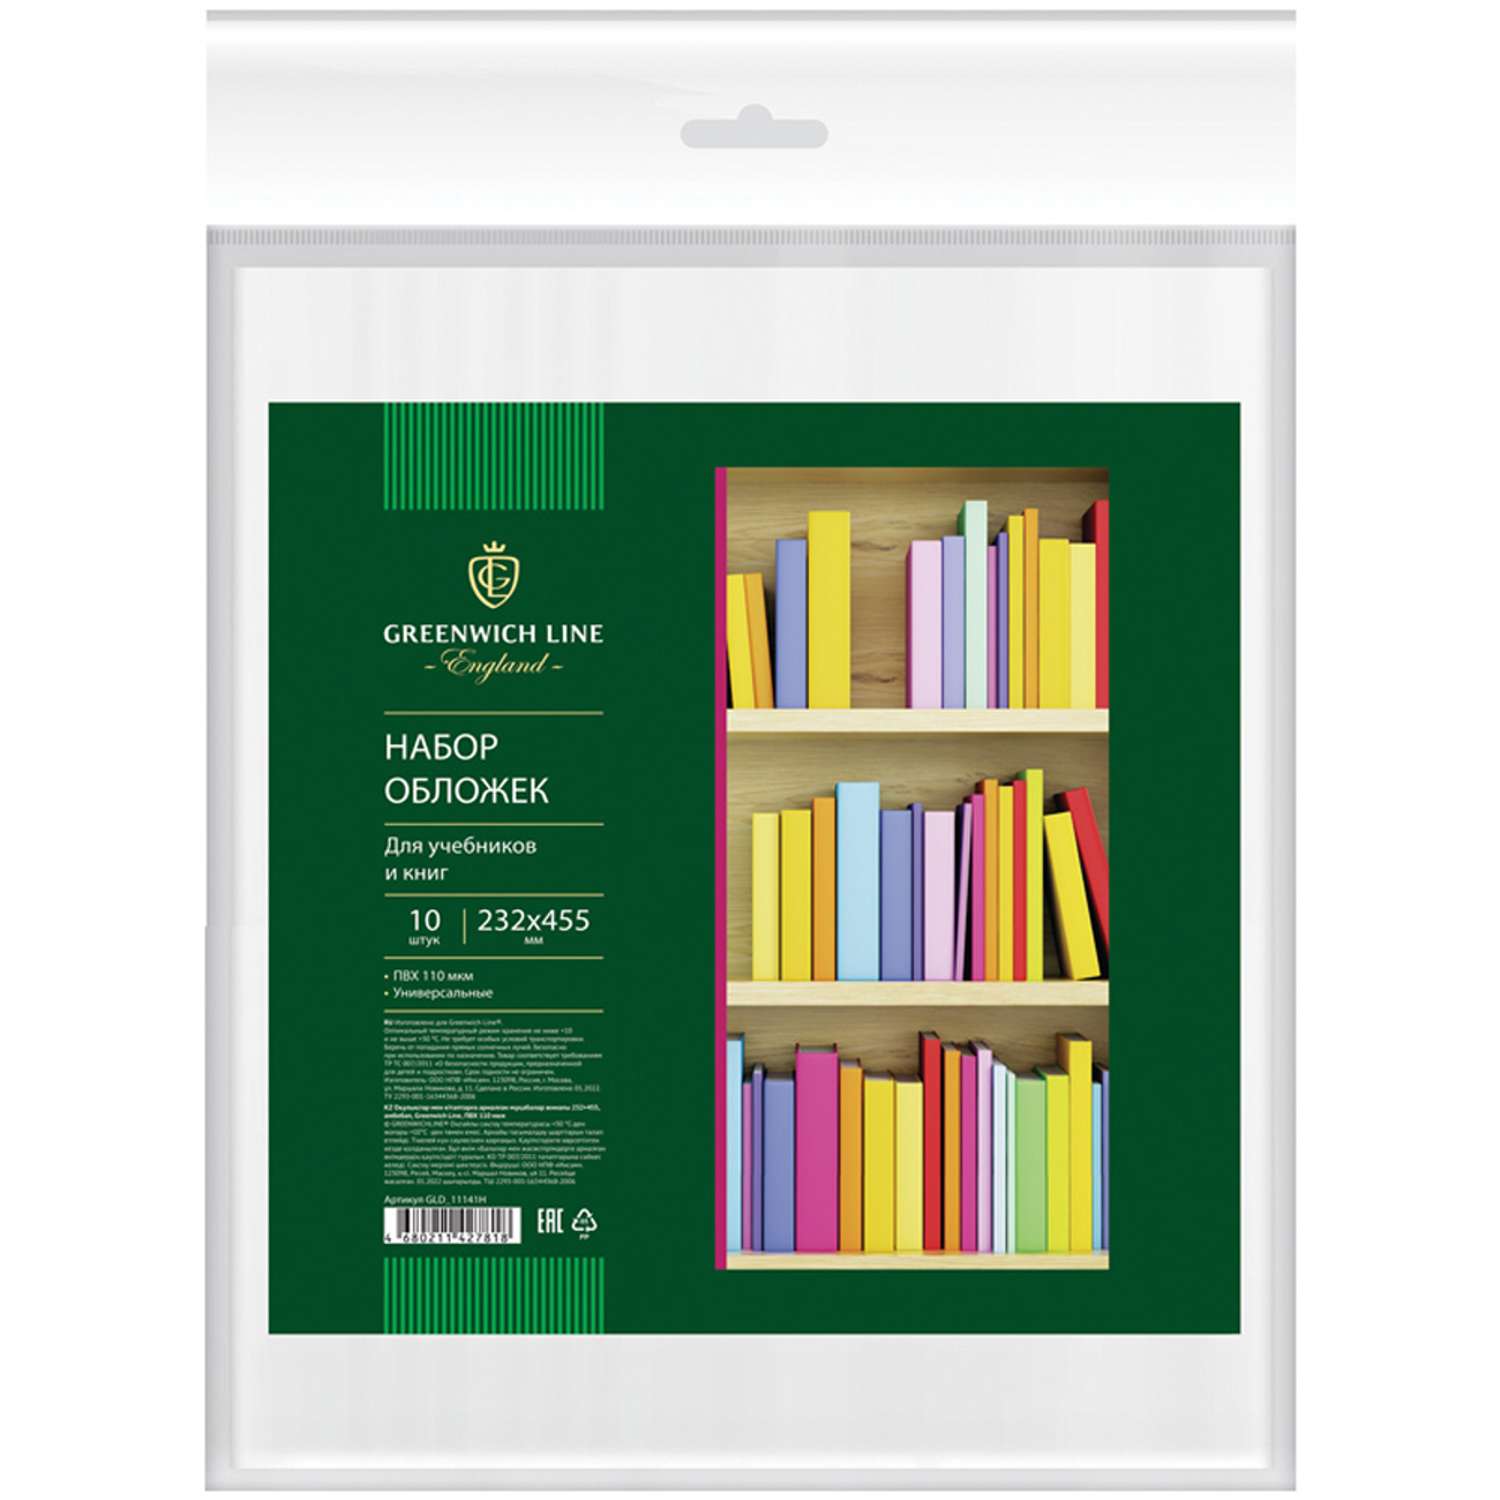 Обложки школьные Greenwich Line 10шт 232*455 для учебников и книг универсальная ПВХ 110 мкм - фото 1